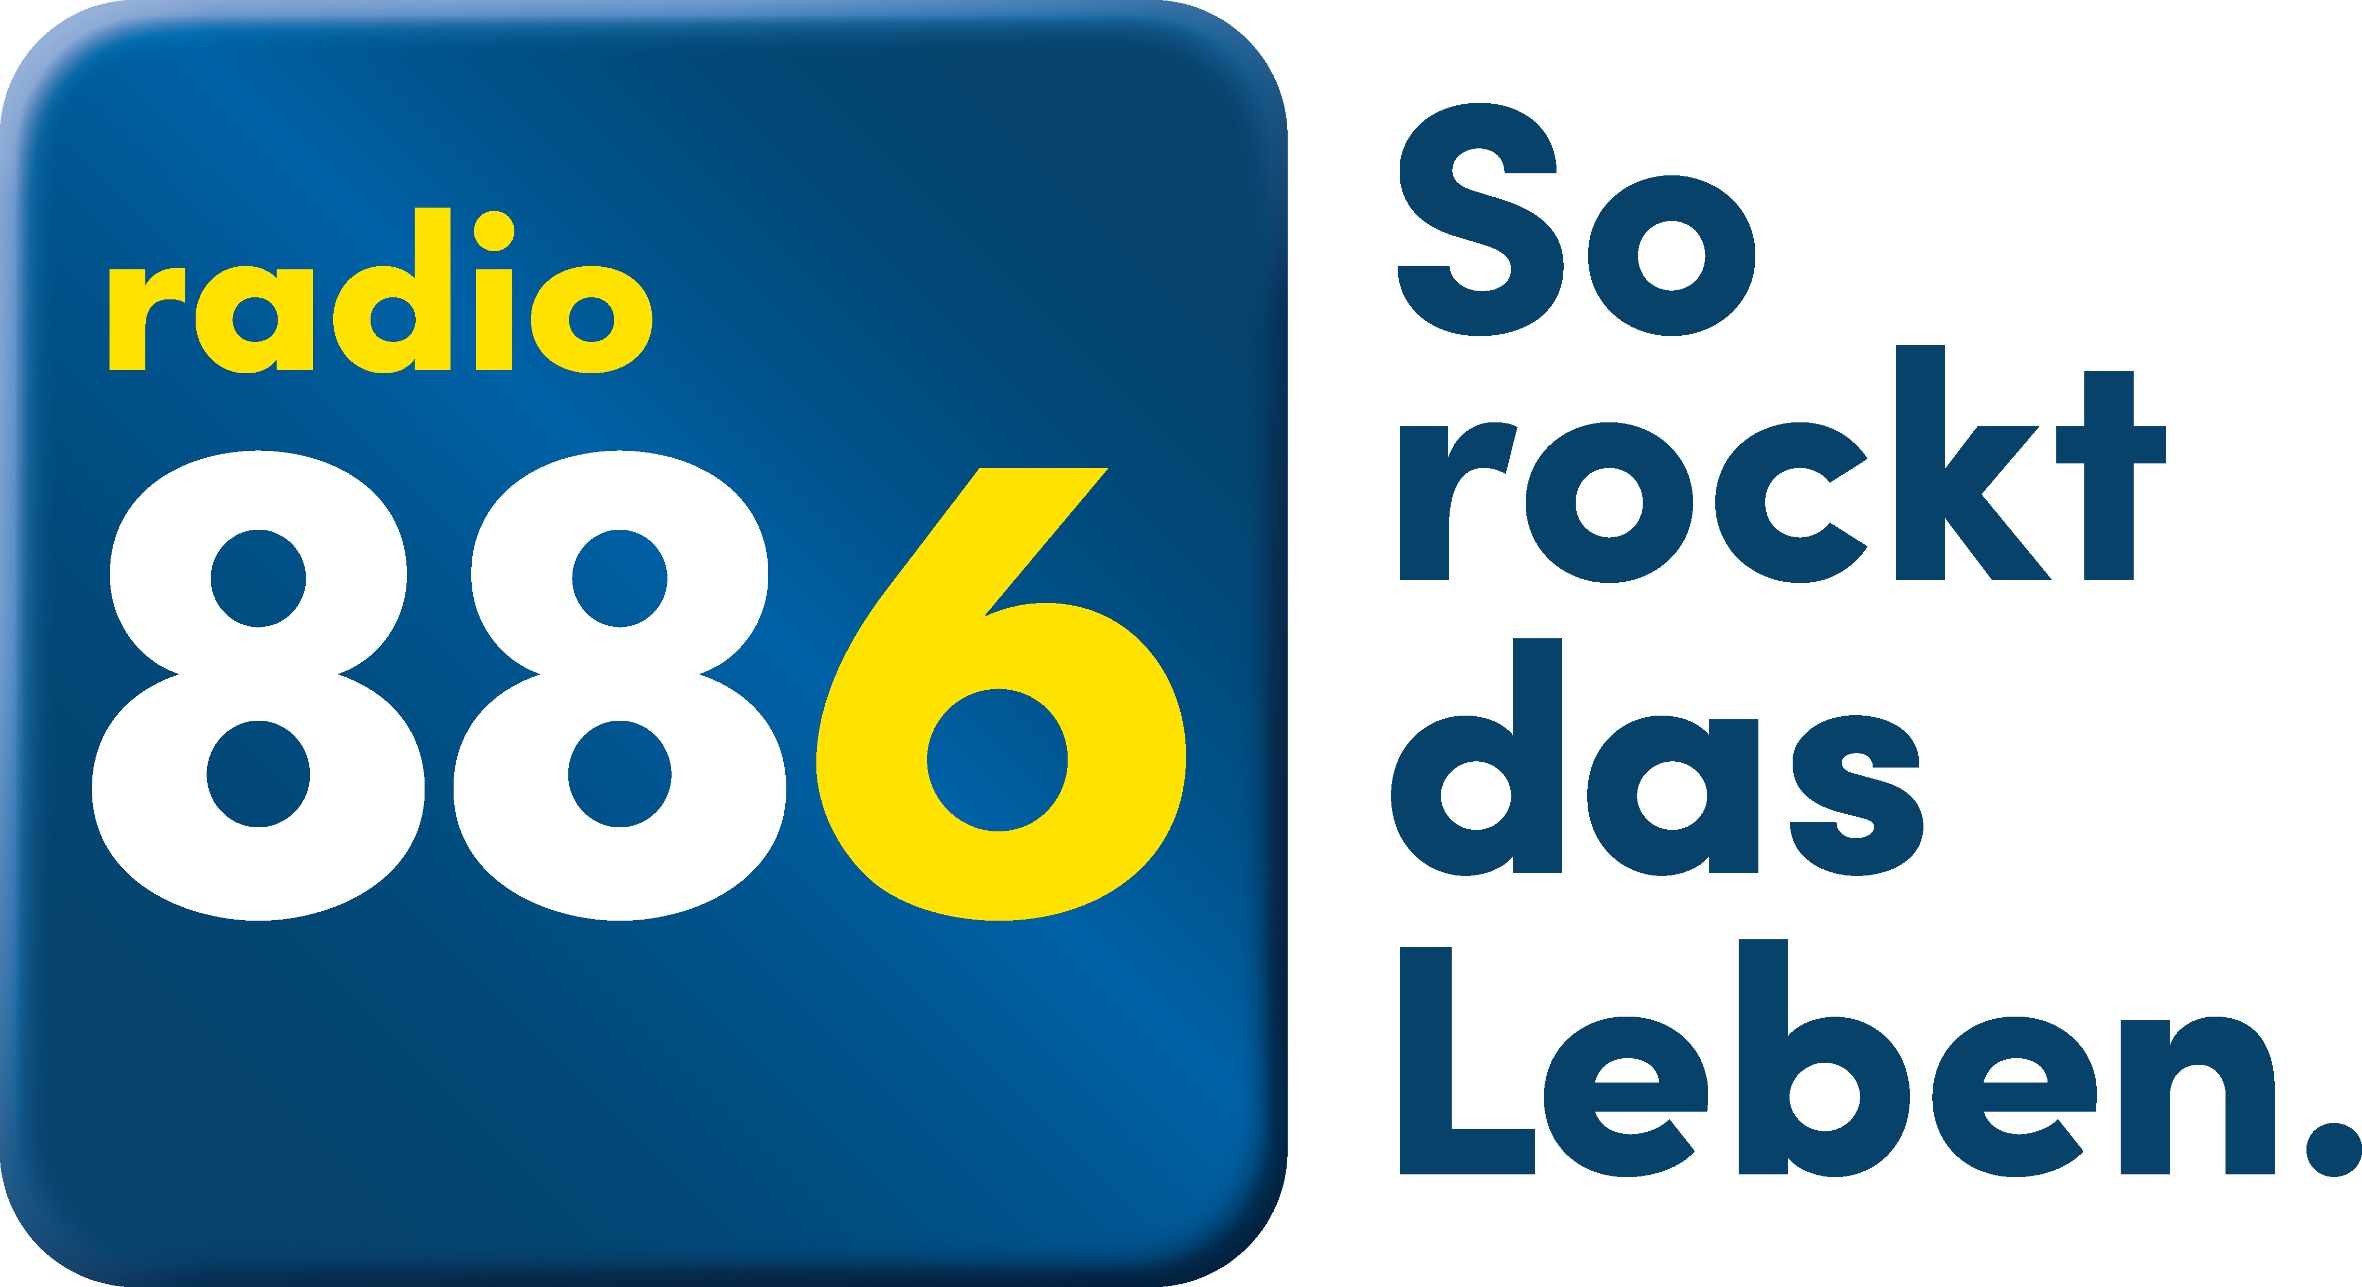 Radio 886